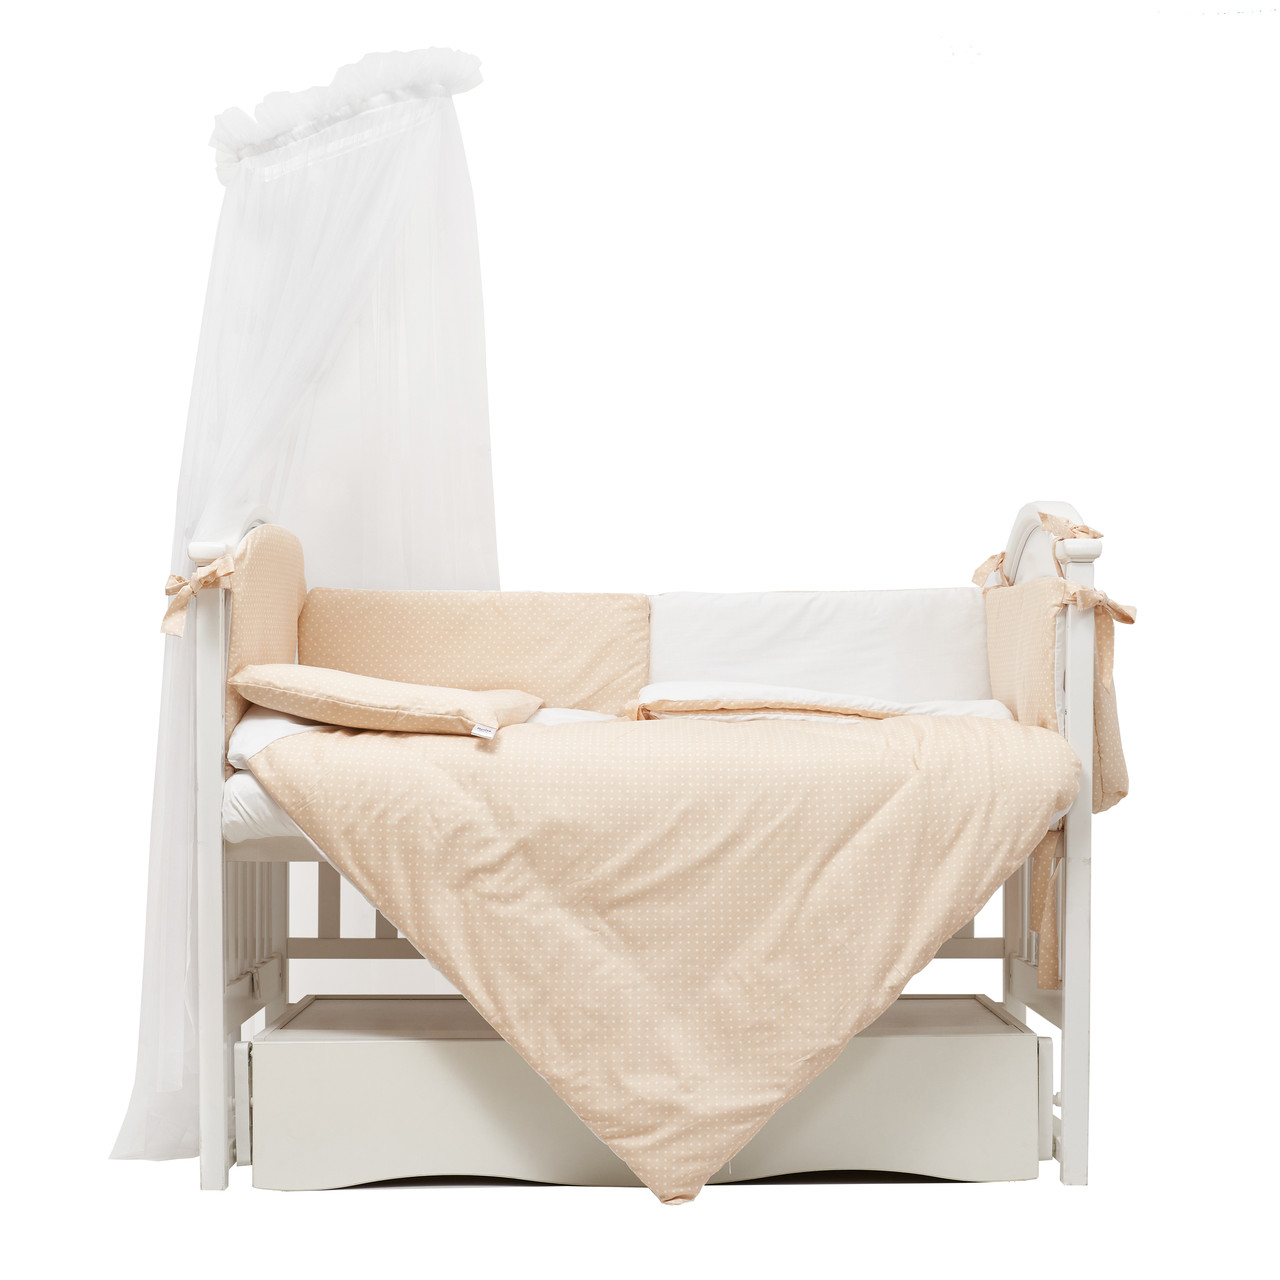 Комплект дитячого ліжка в ліжечко 8 ел Twins Standard New 4050-CN-037, мікс, мультиколір